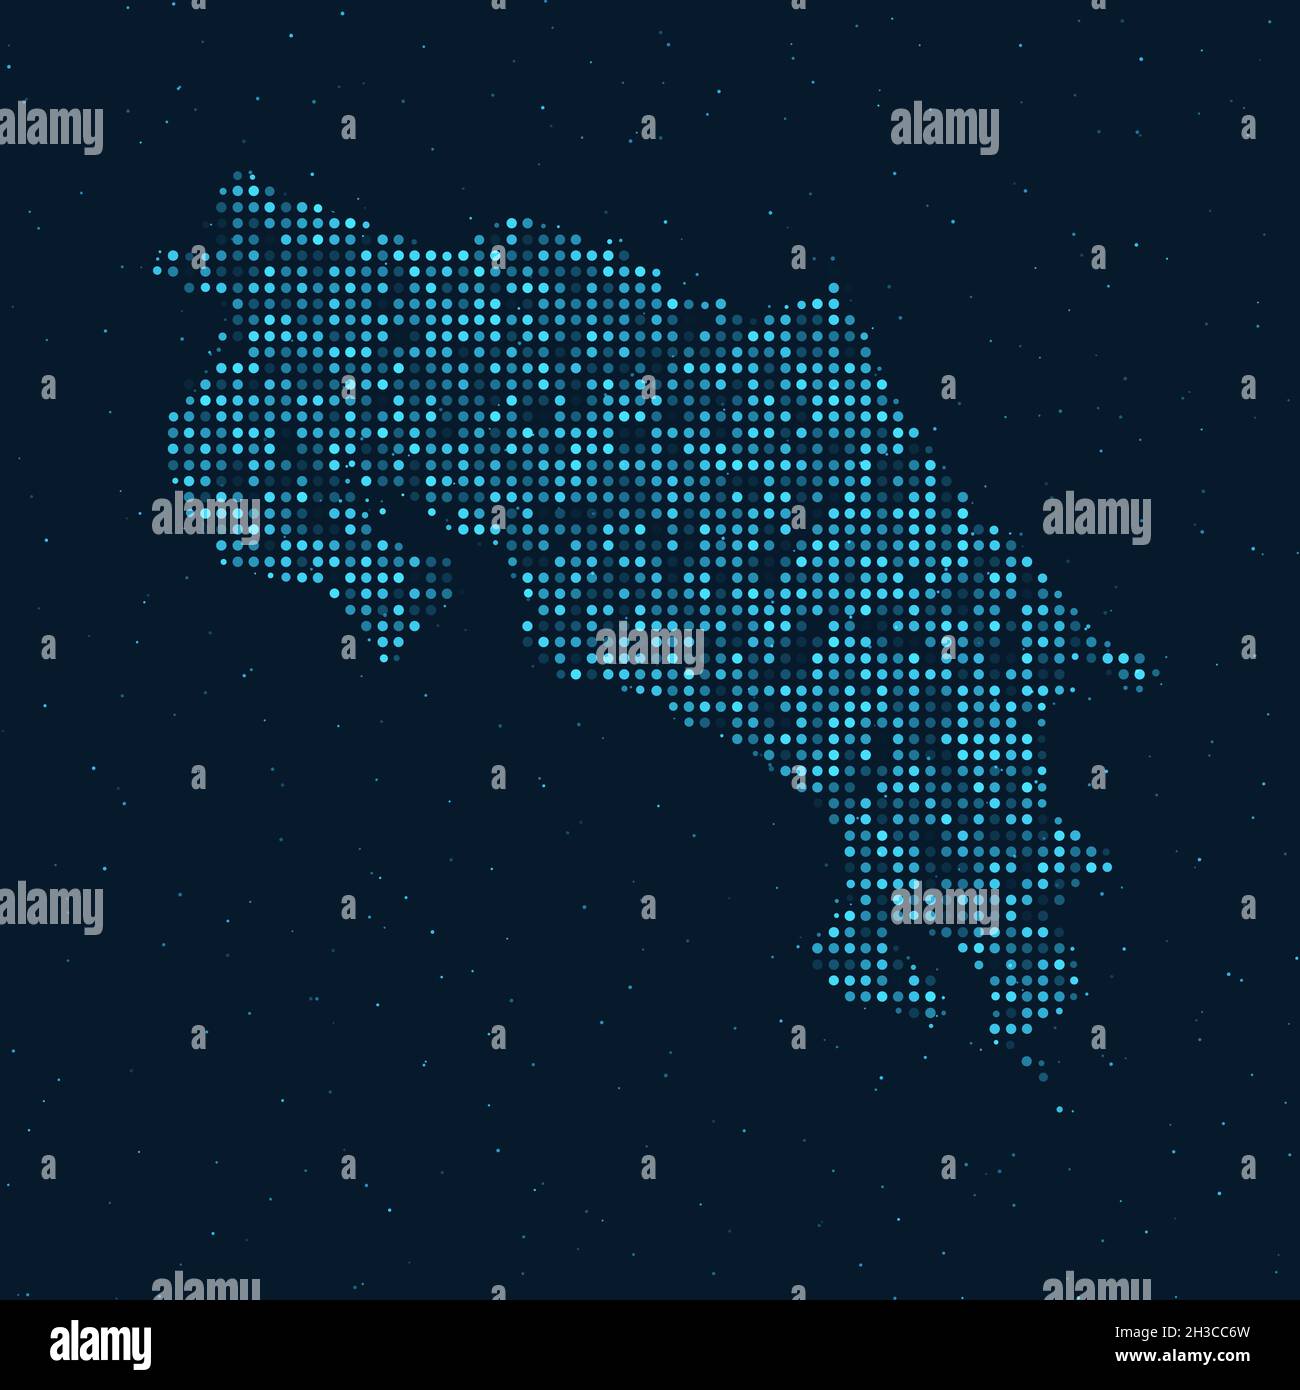 Mezzitoni astratti punteggiati con effetto stellato su sfondo blu scuro con mappa del Costa Rica. Tecnologia digitale punteggiata design sfera e struttura. vec Illustrazione Vettoriale